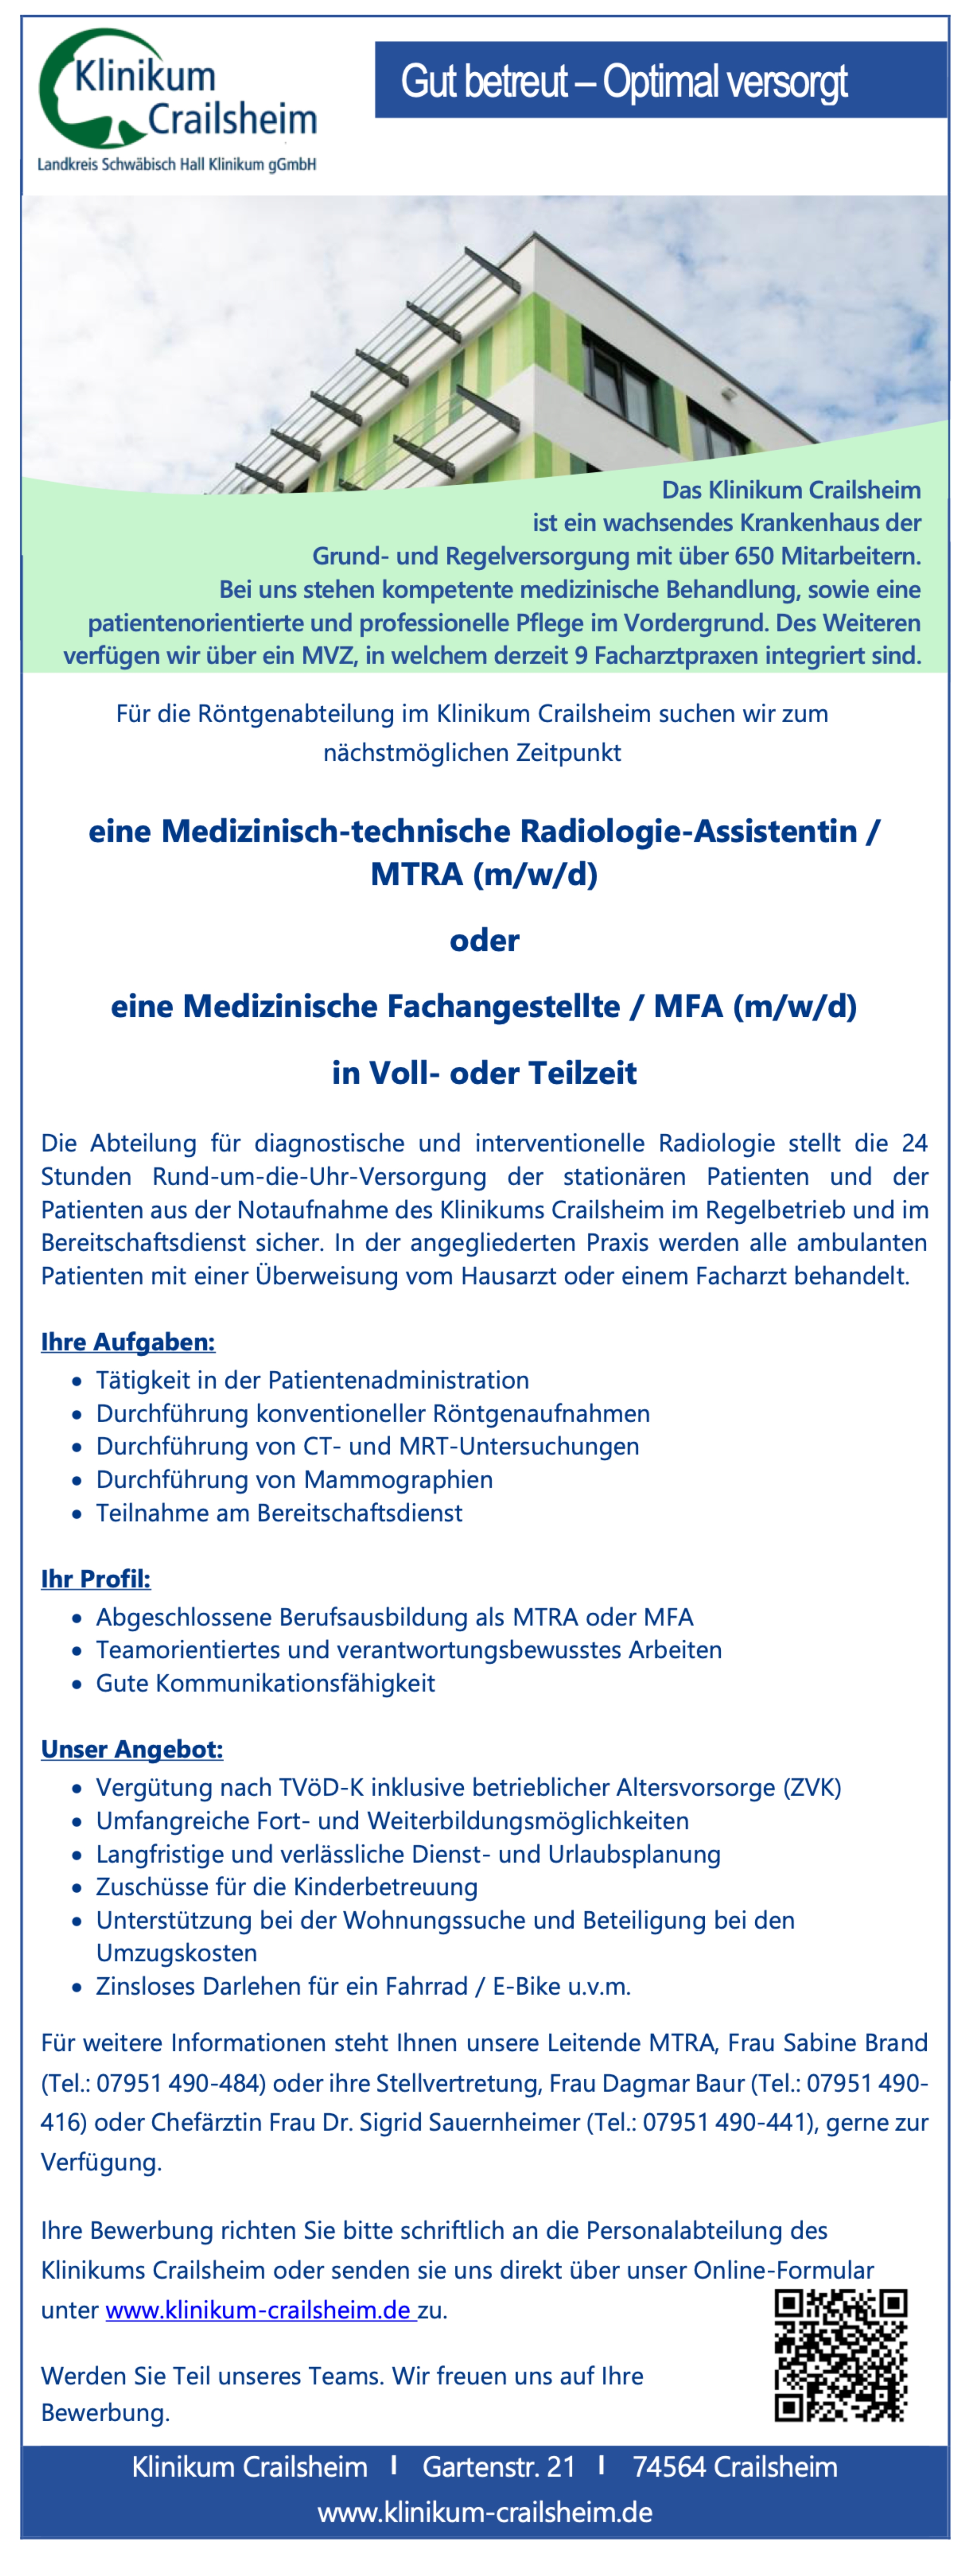 Medizinisch-technische Radiologie-Assistentin / MTRA (m/w/d) oder Medizinische Fachangestellte / MFA (m/w/d)